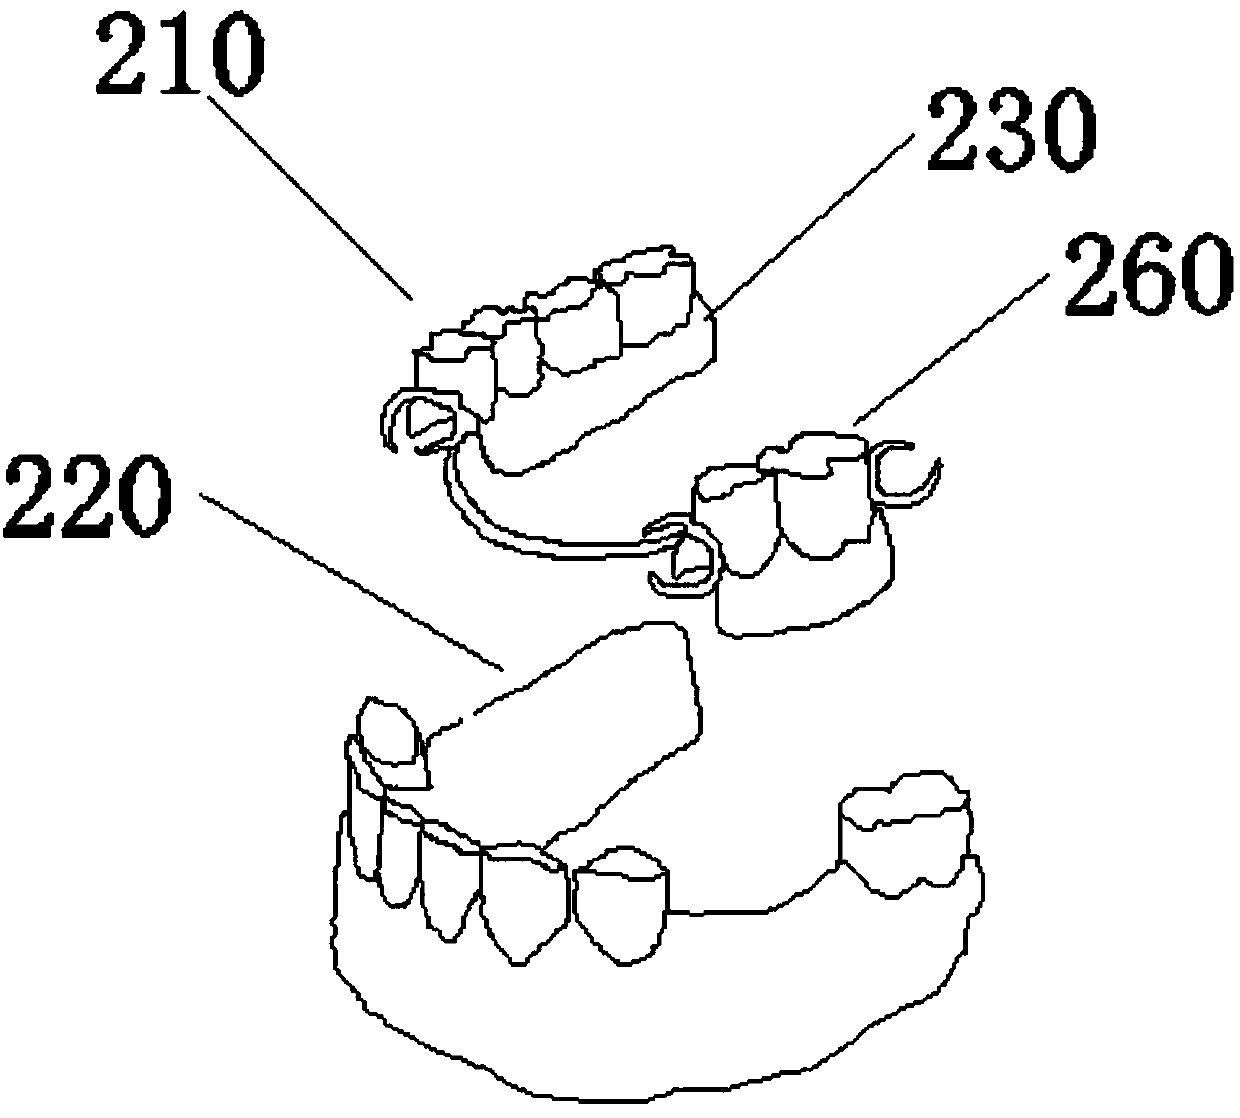 Secondary fine repair material for artificial teeth